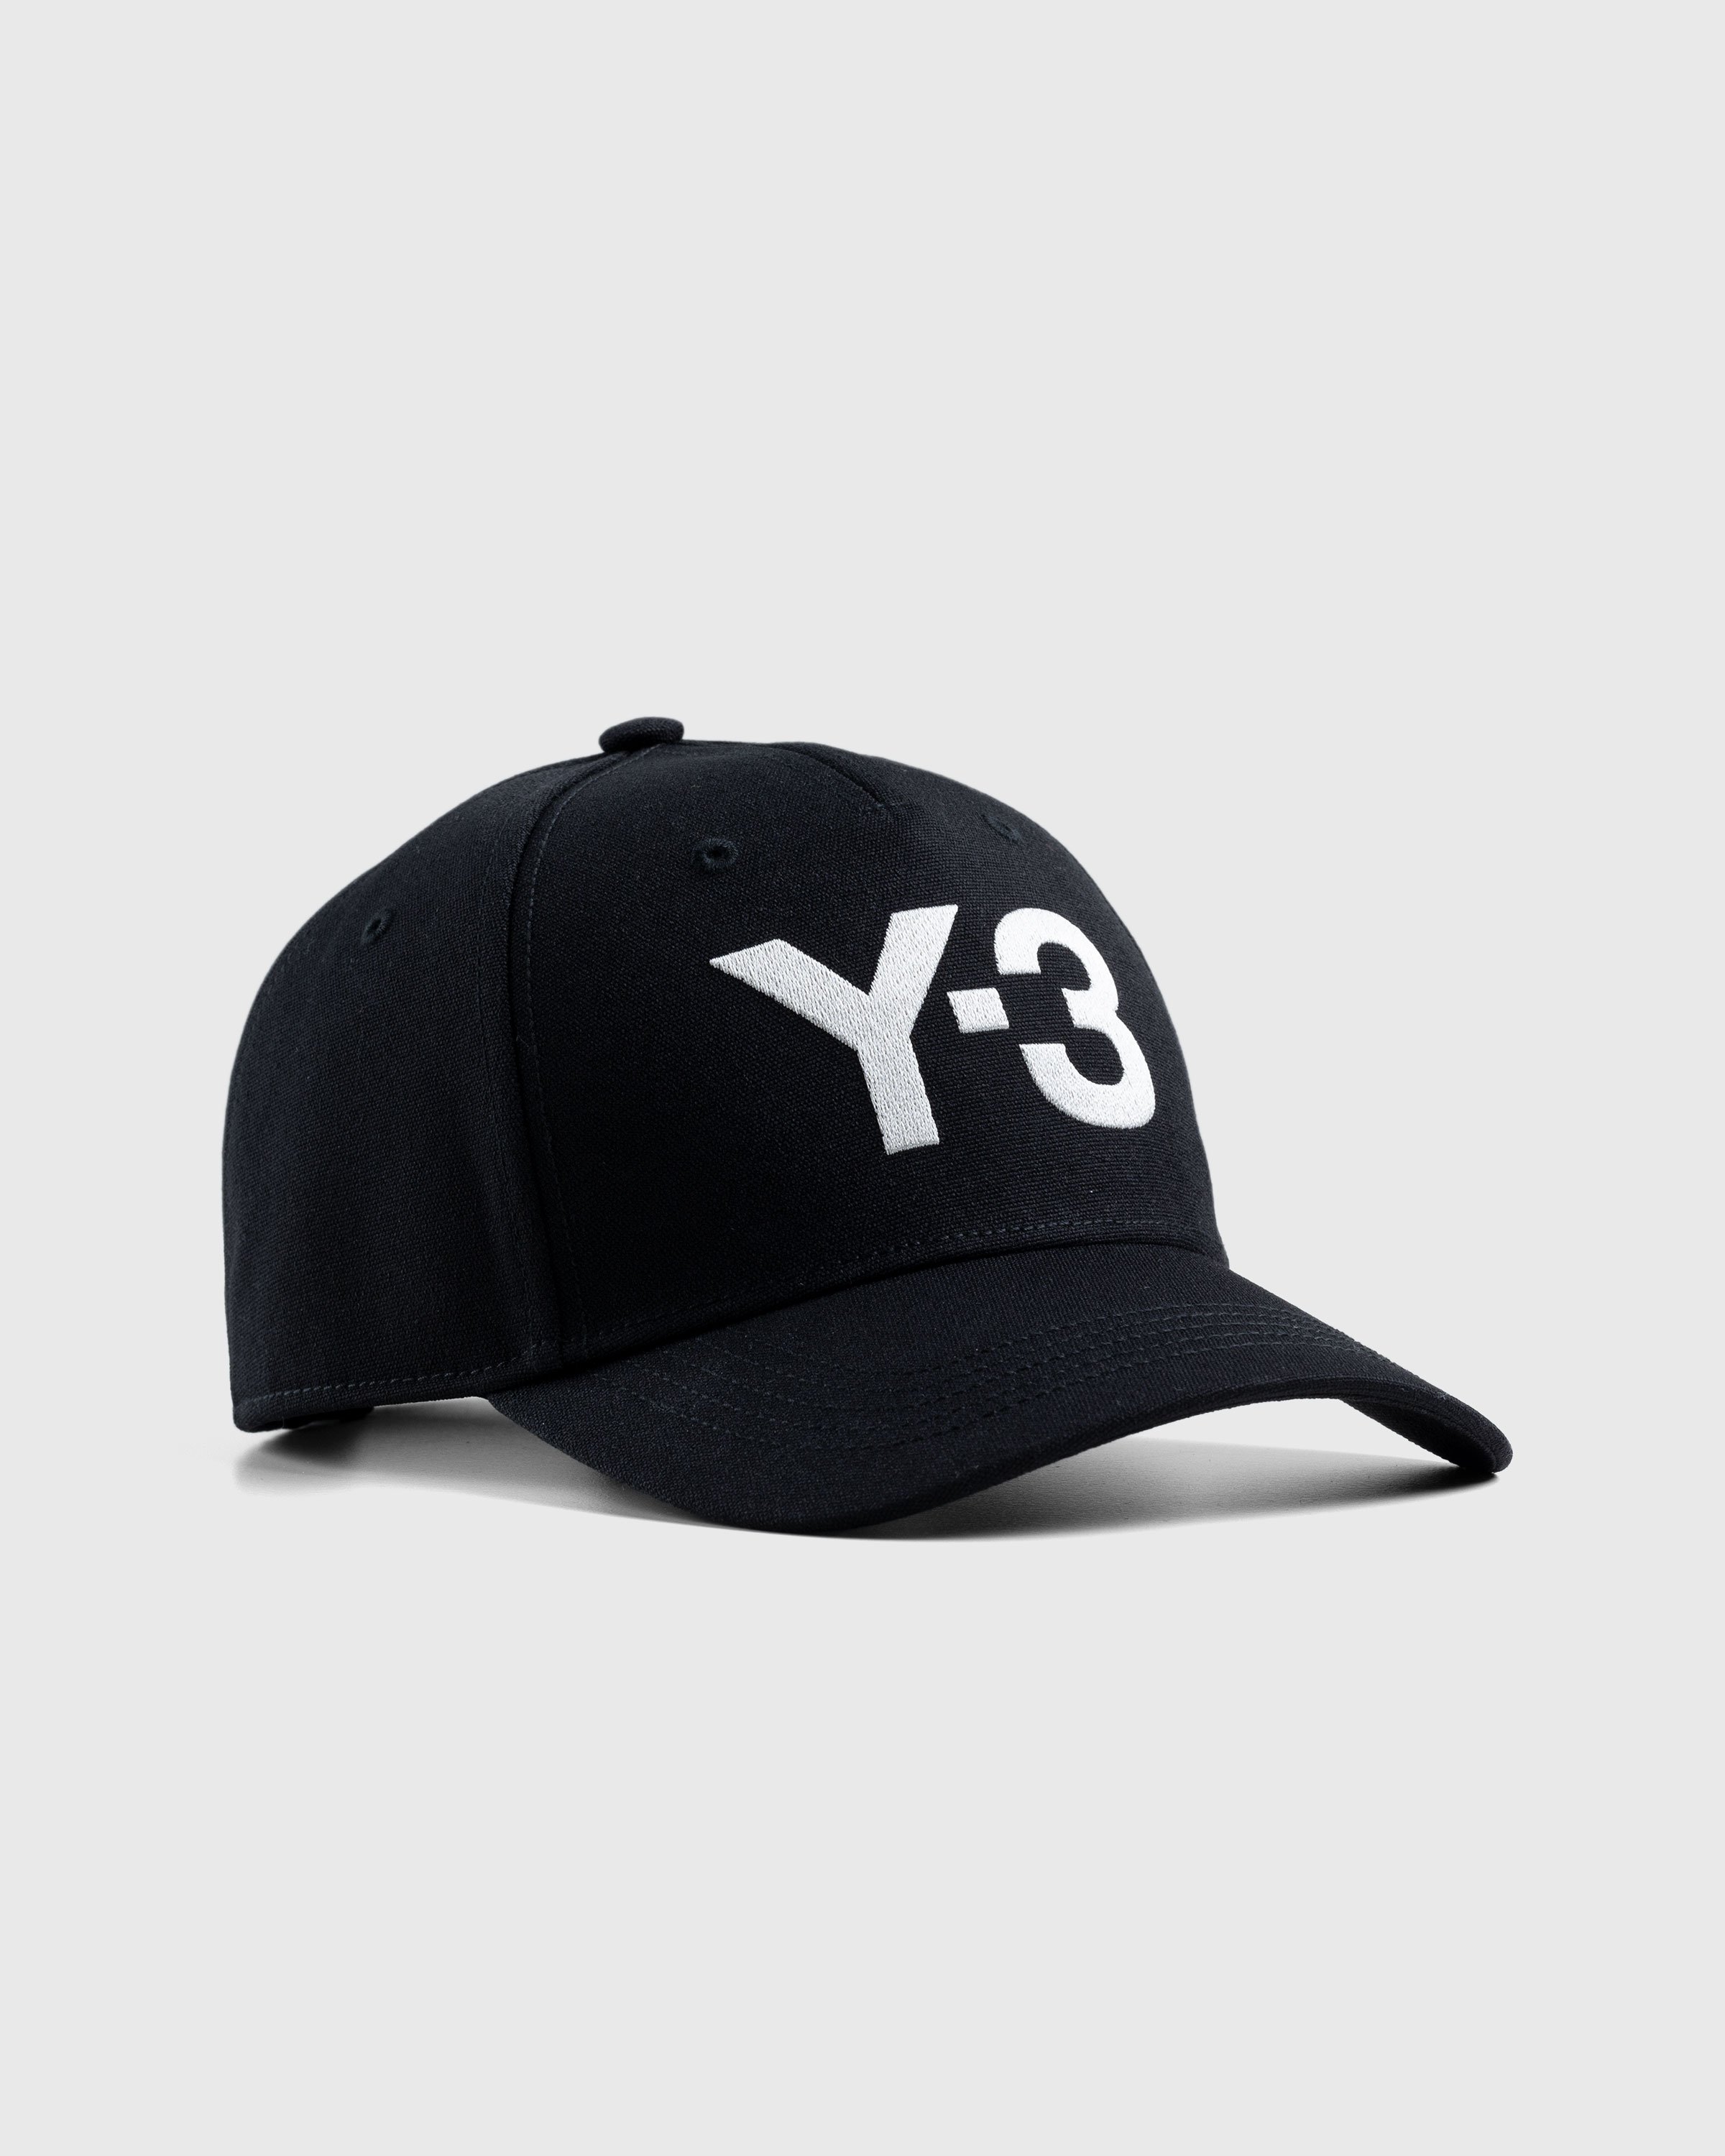 Y-3 - Logo Cap Black - Accessories - Black - Image 1